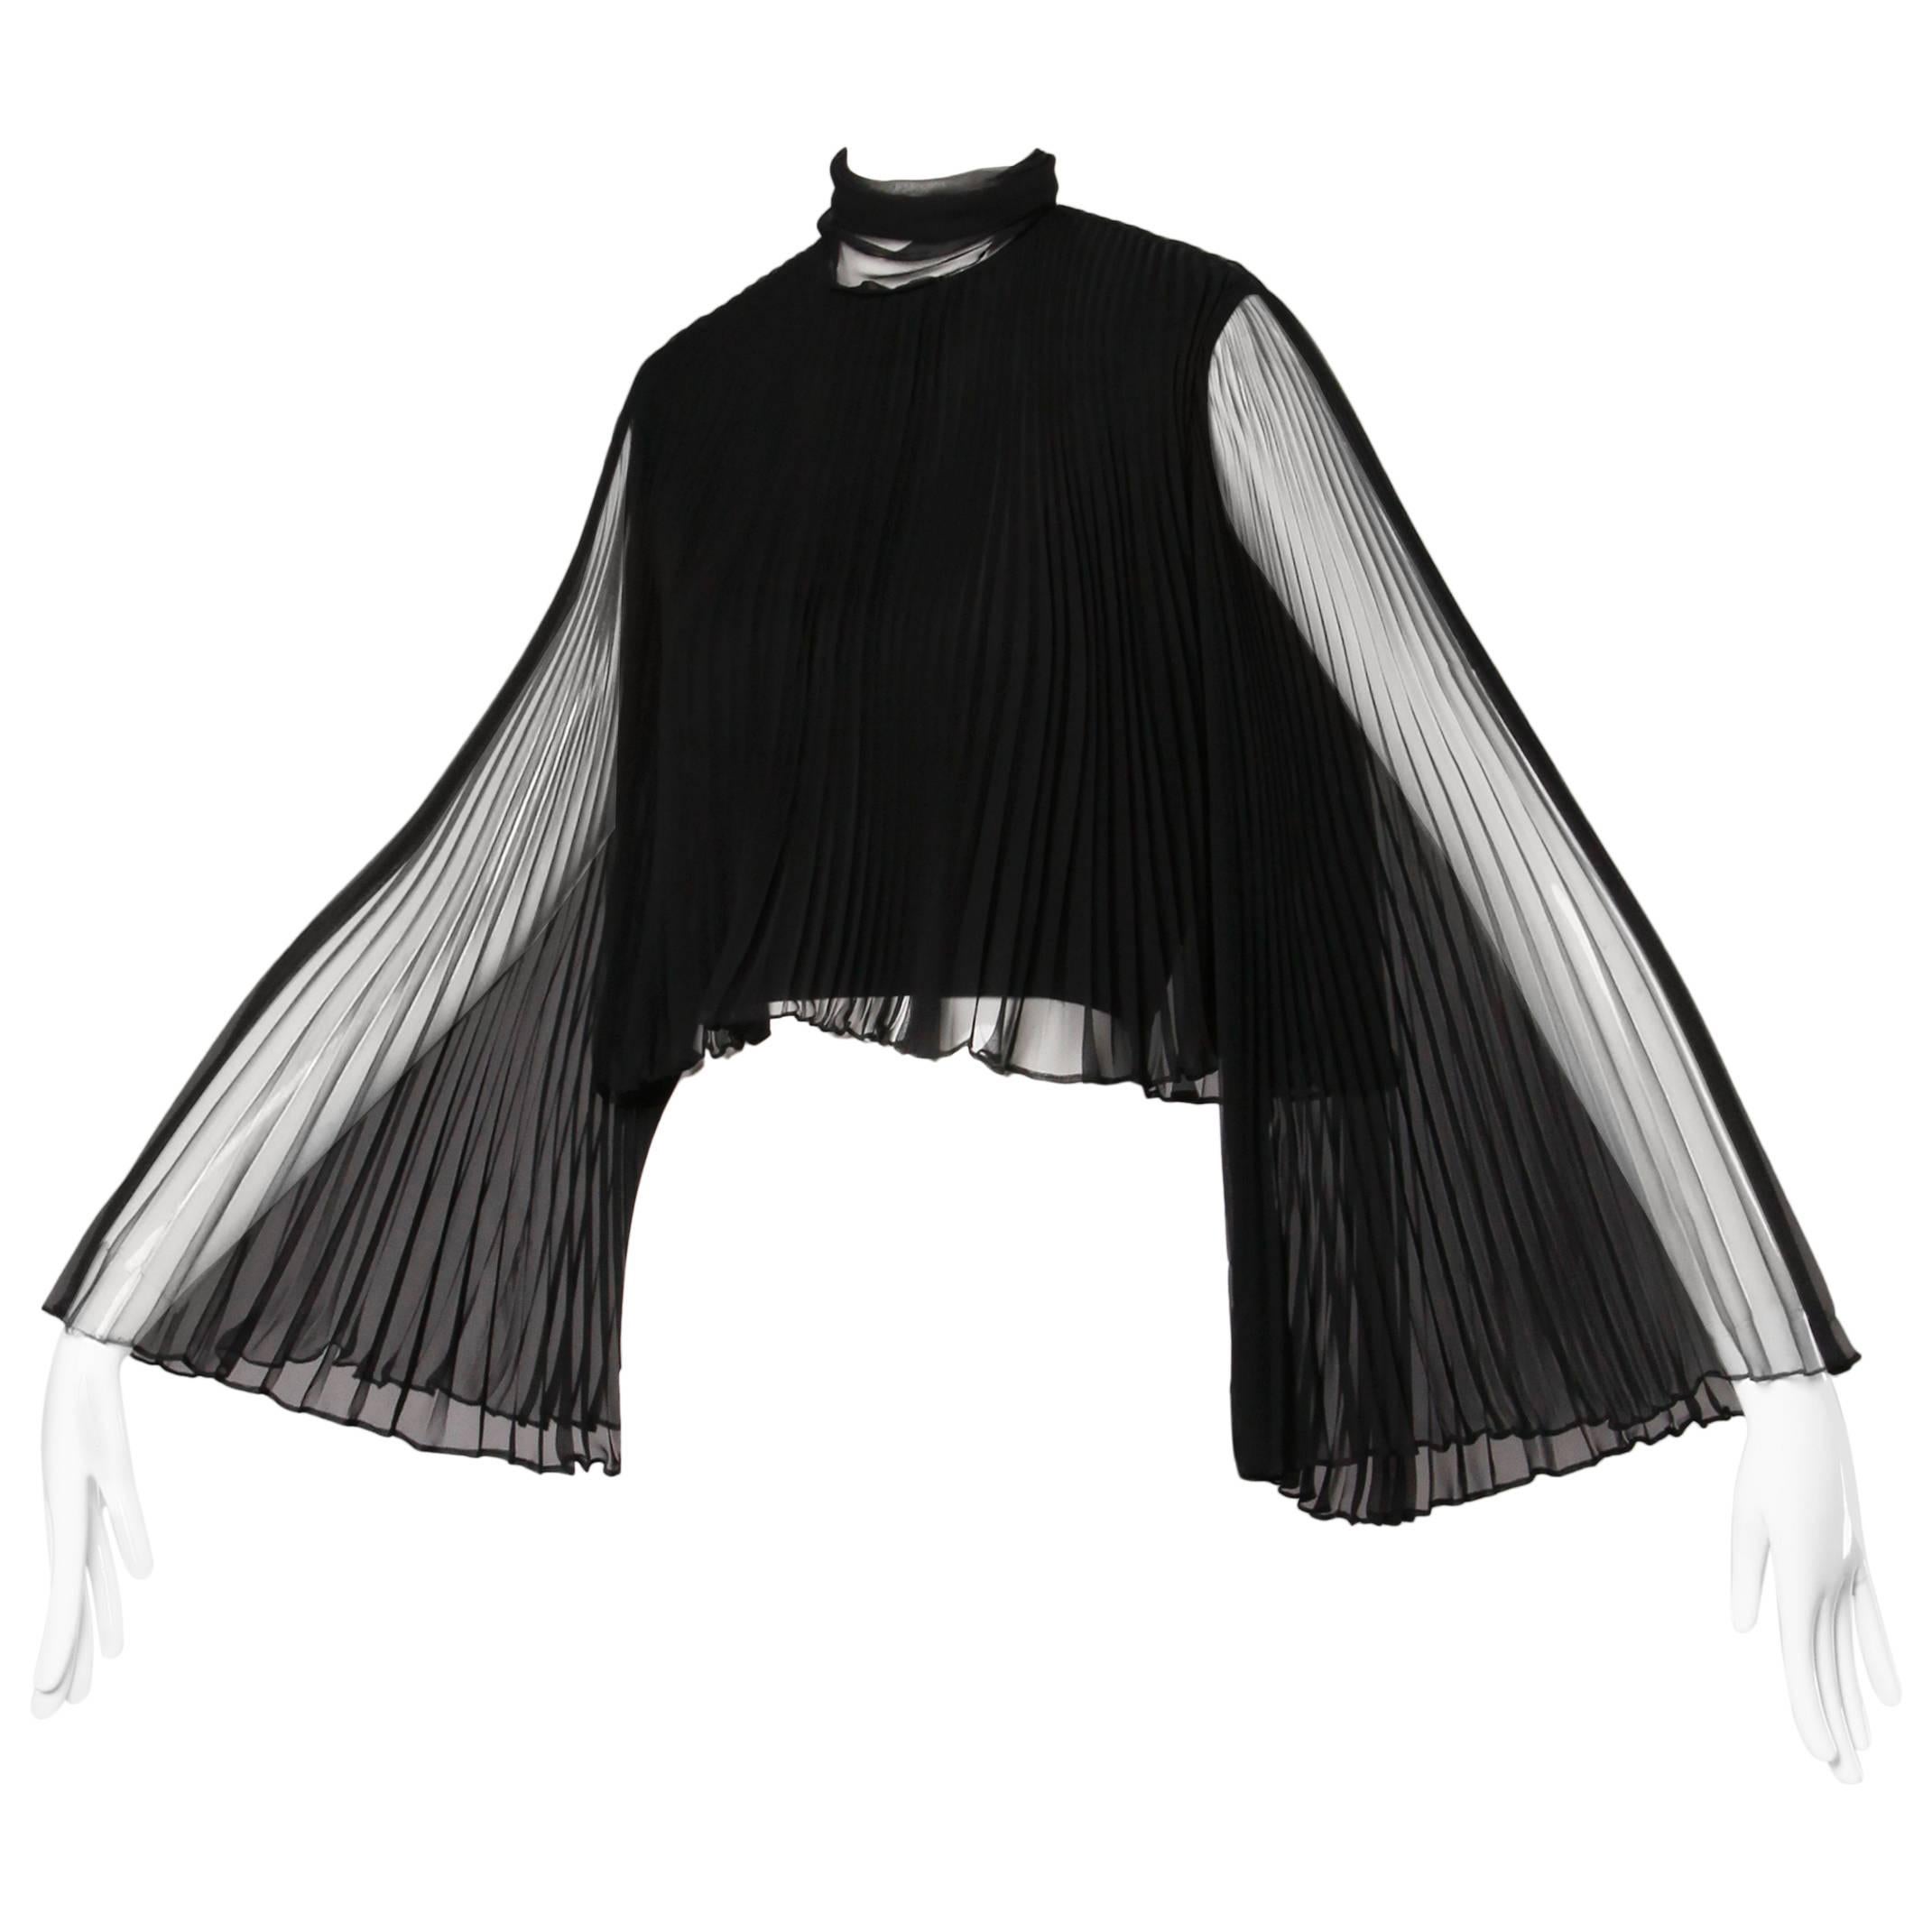 Mollie Parnis Vintage 1960s Black Accordian Pleated Crop Top with Angel Sleeves